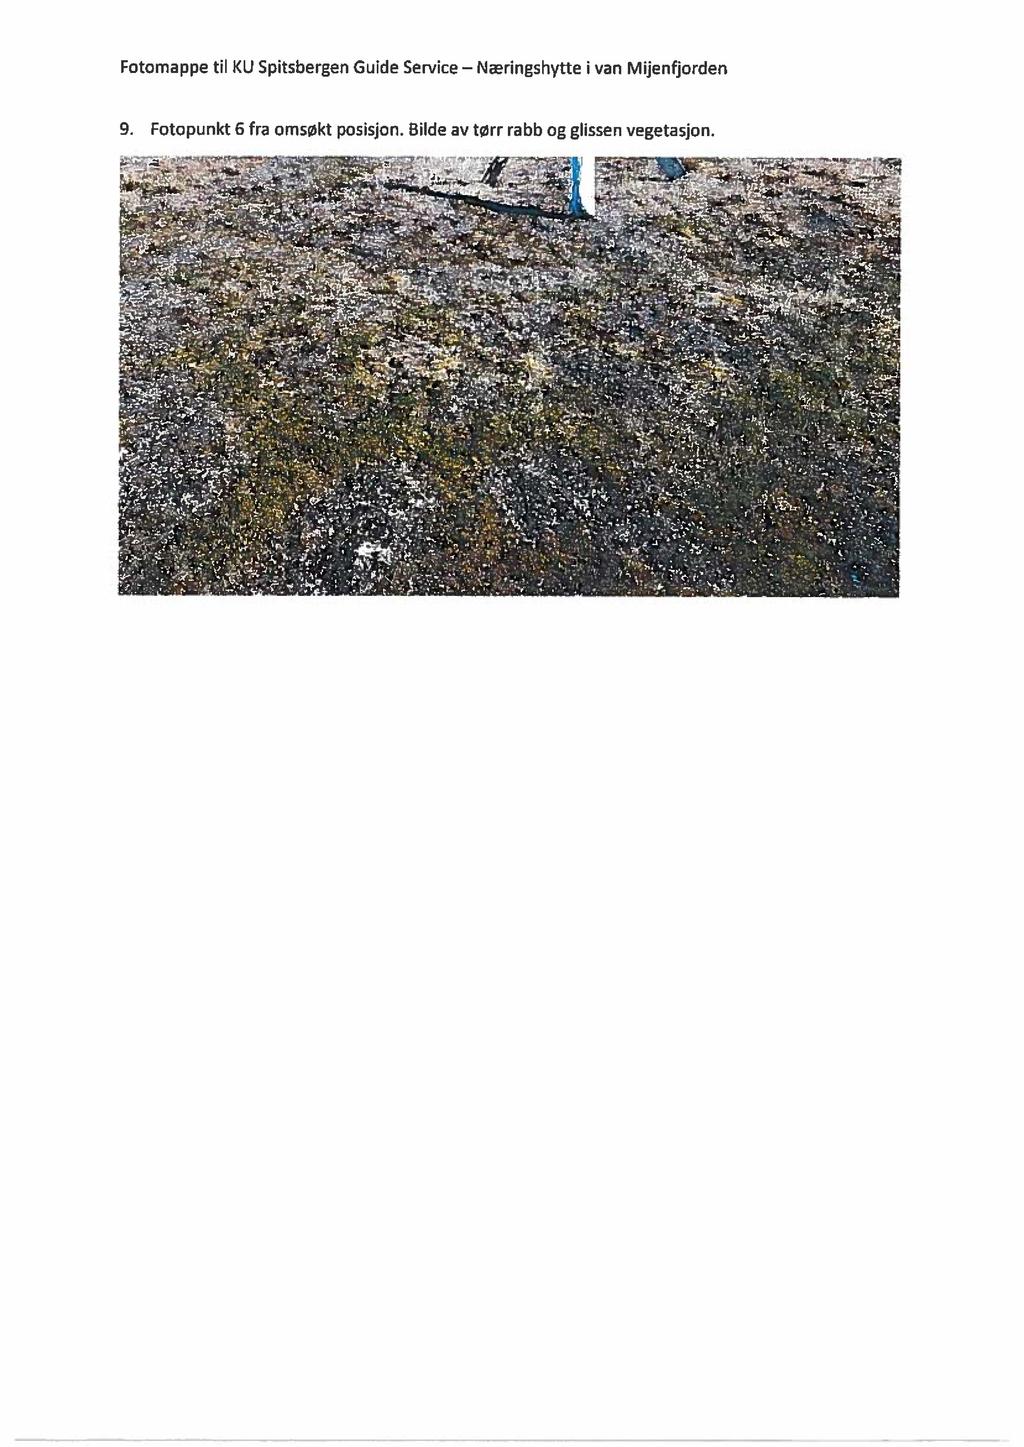 Fotomappe til KU Spitsbergen Guide Service Næringshvtte i van Mijenfiorden 9. Fotopunkt 6 fra omsøkt posisjon. Bilde av tørr rabb og glissen vegetasjon. ågxfäää he ~"~'»«rmy',; F," ' -».».._.